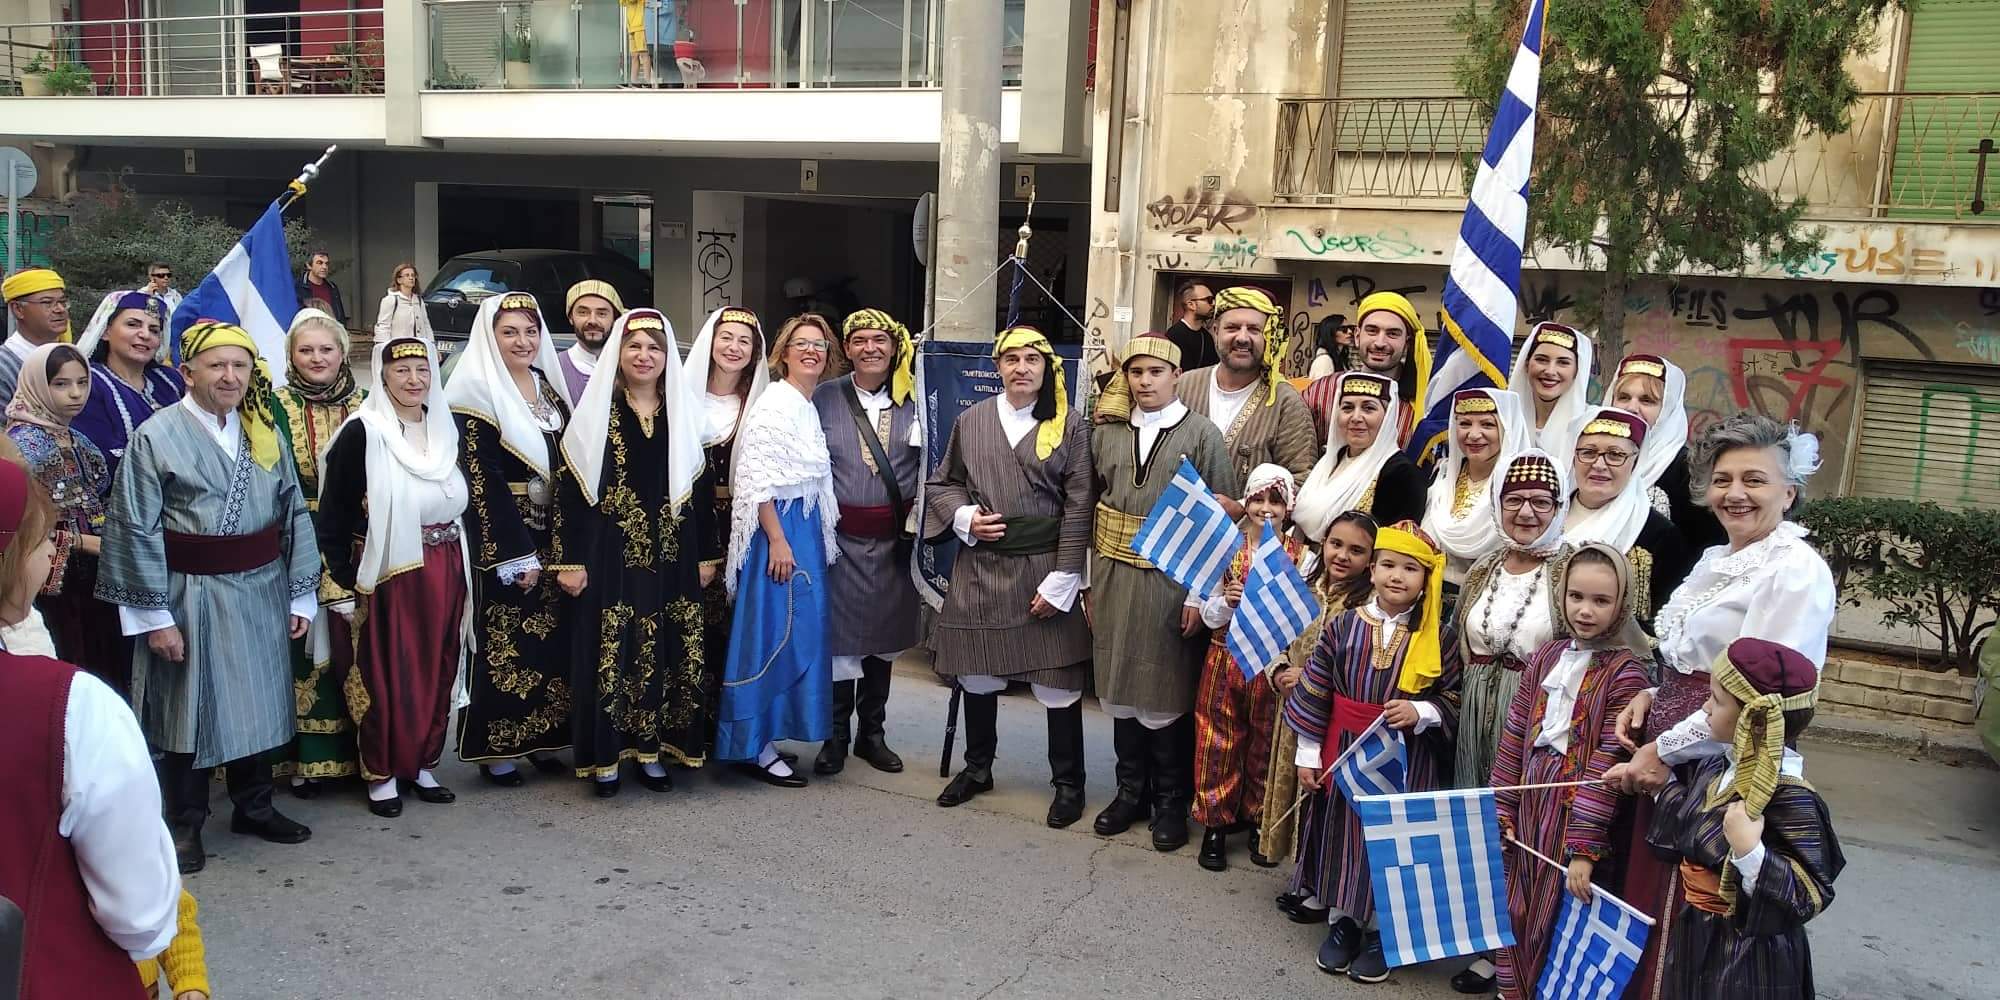 Εύβοια: Επιβλητική παρουσία του Συλλόγου Καππαδοκών στην μεγάλη παρέλαση της Χαλκίδας